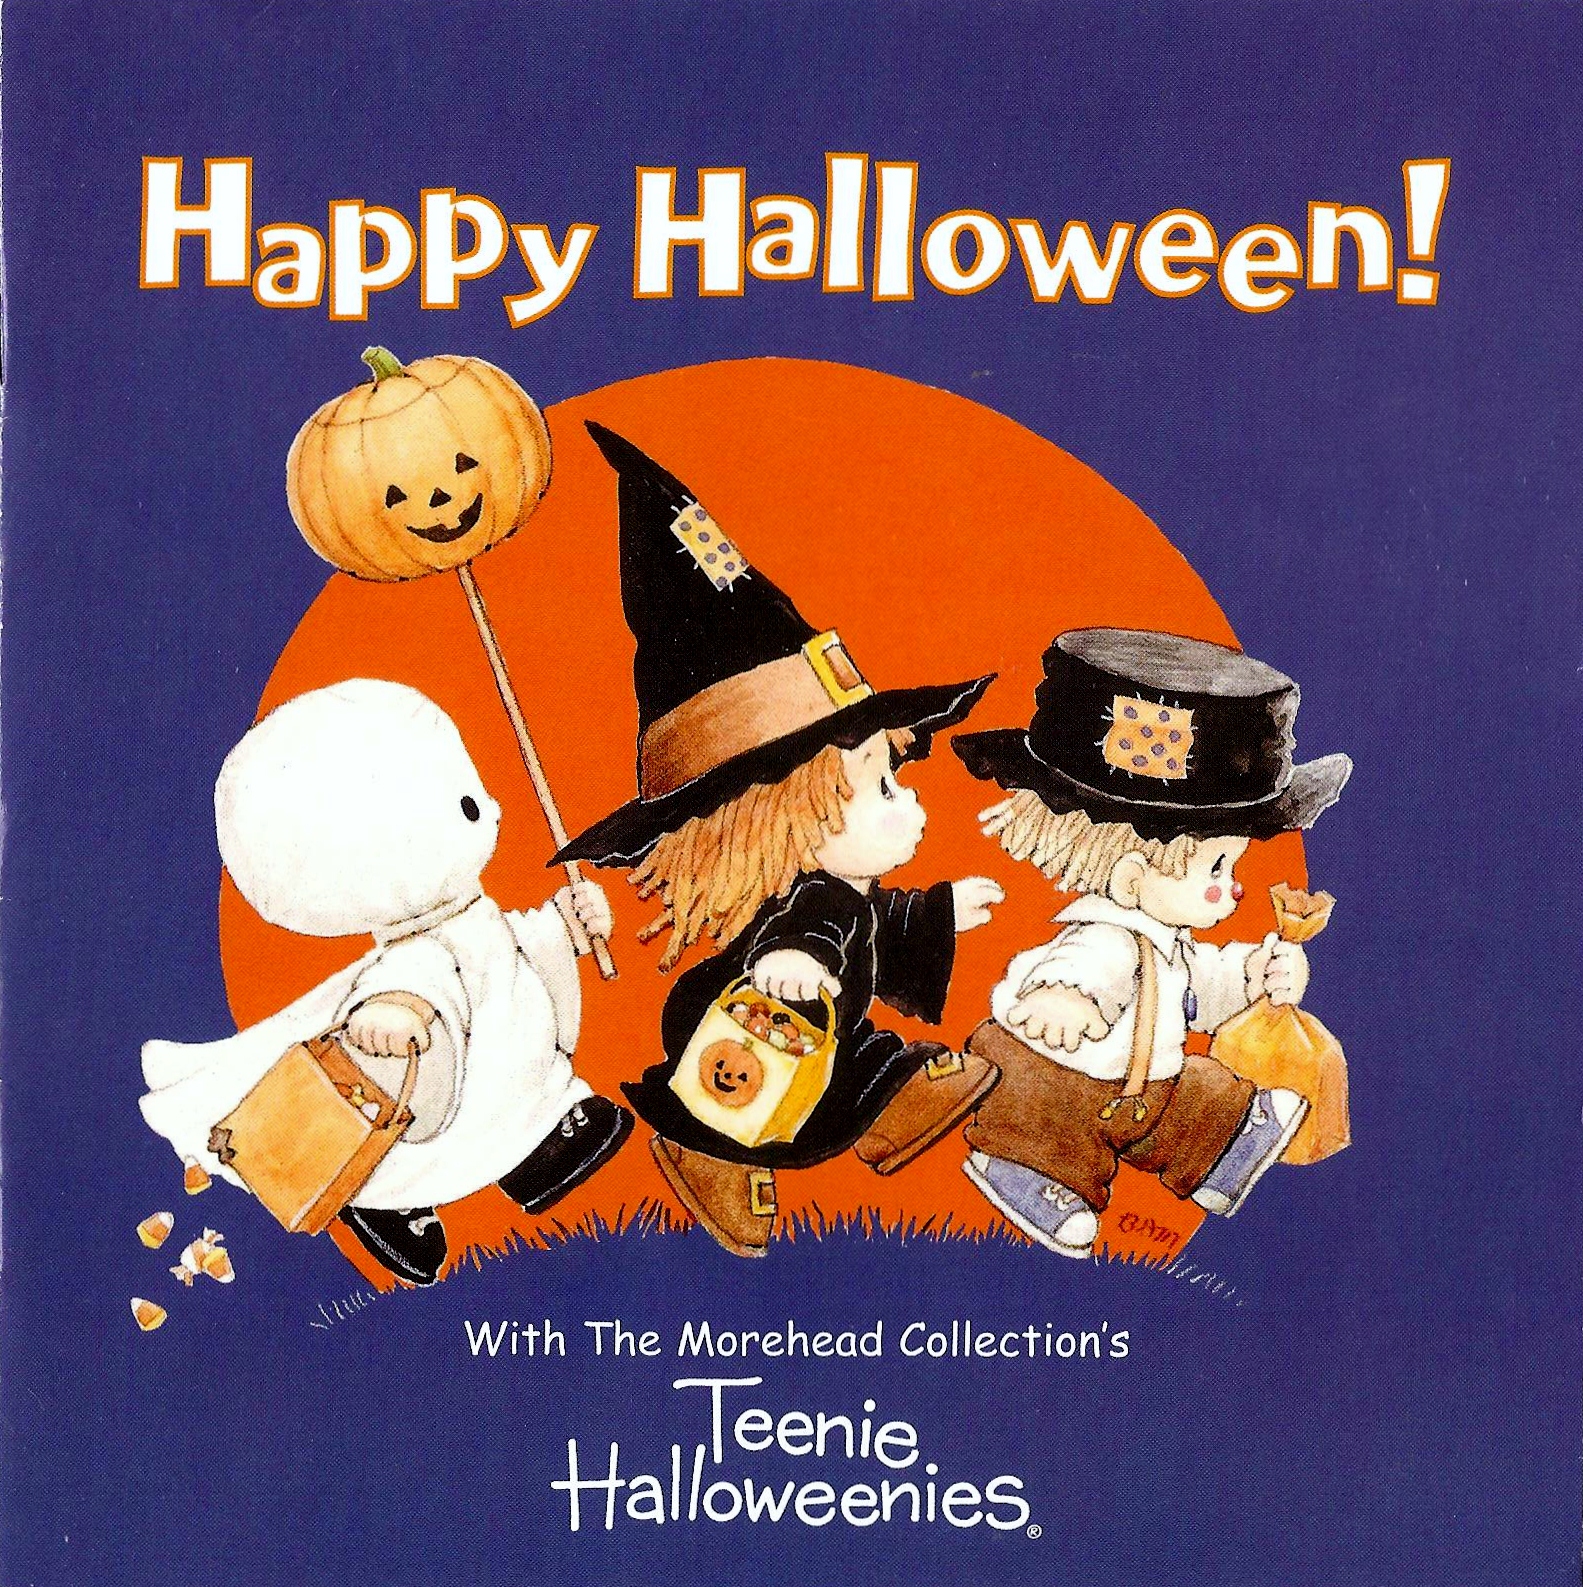 Teenie Halloweenies